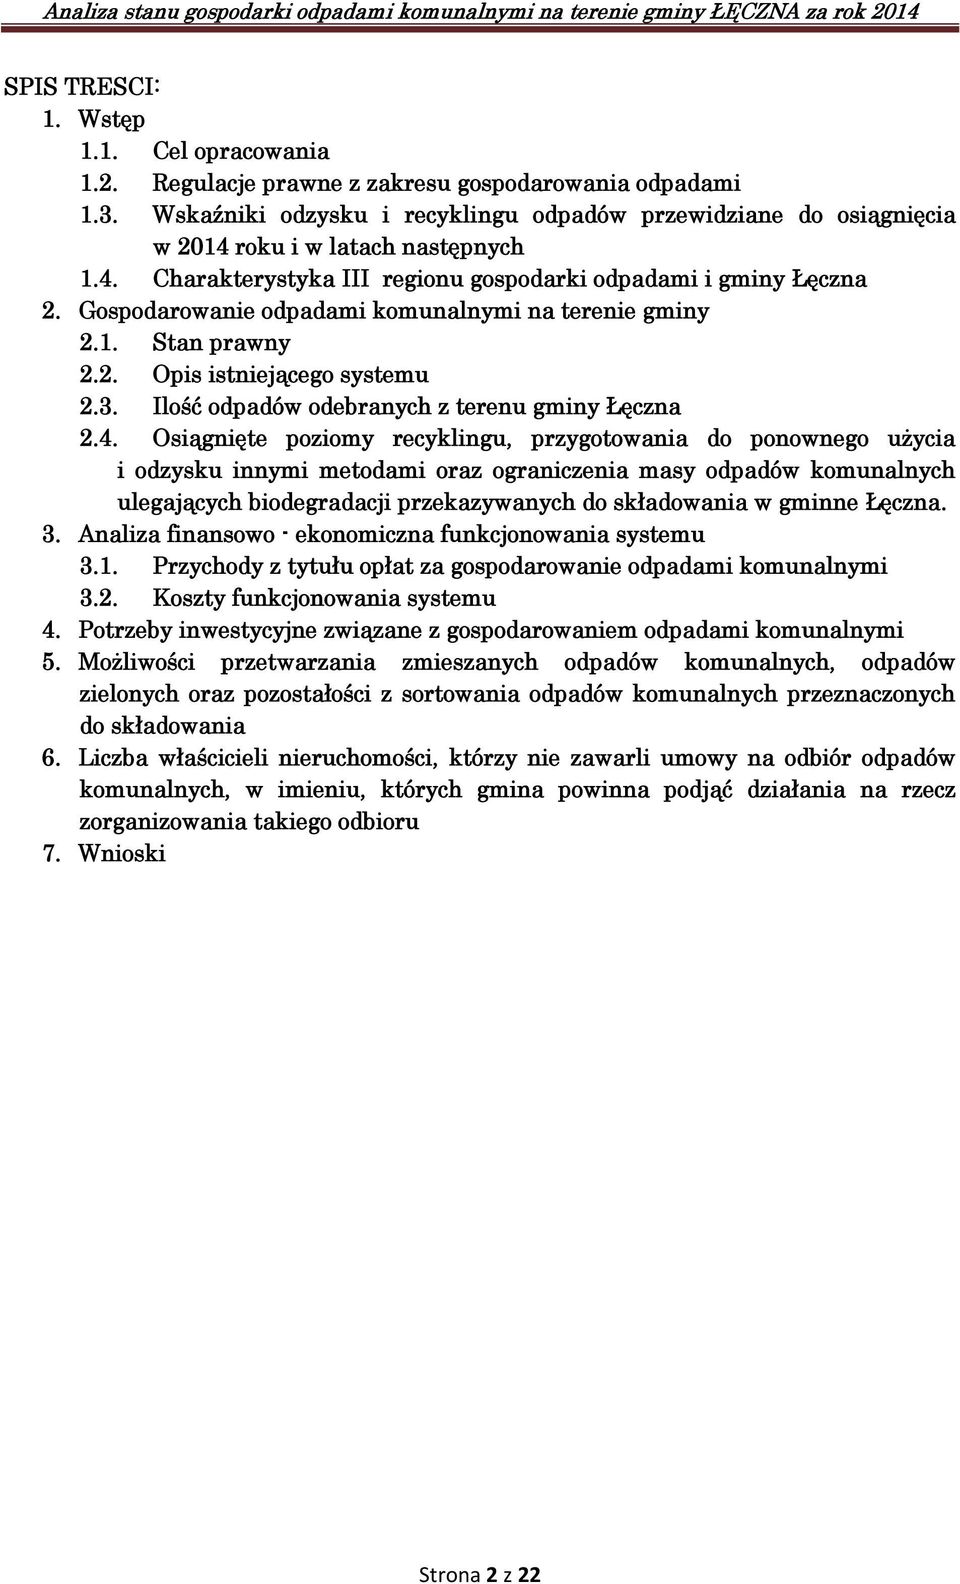 Gospodarowanie odpadami komunalnymi na terenie gminy 2.1. Stan prawny 2.2. Opis istniejącego systemu 2.3. Ilość odpadów odebranych z terenu gminy Łęczna 2.4.